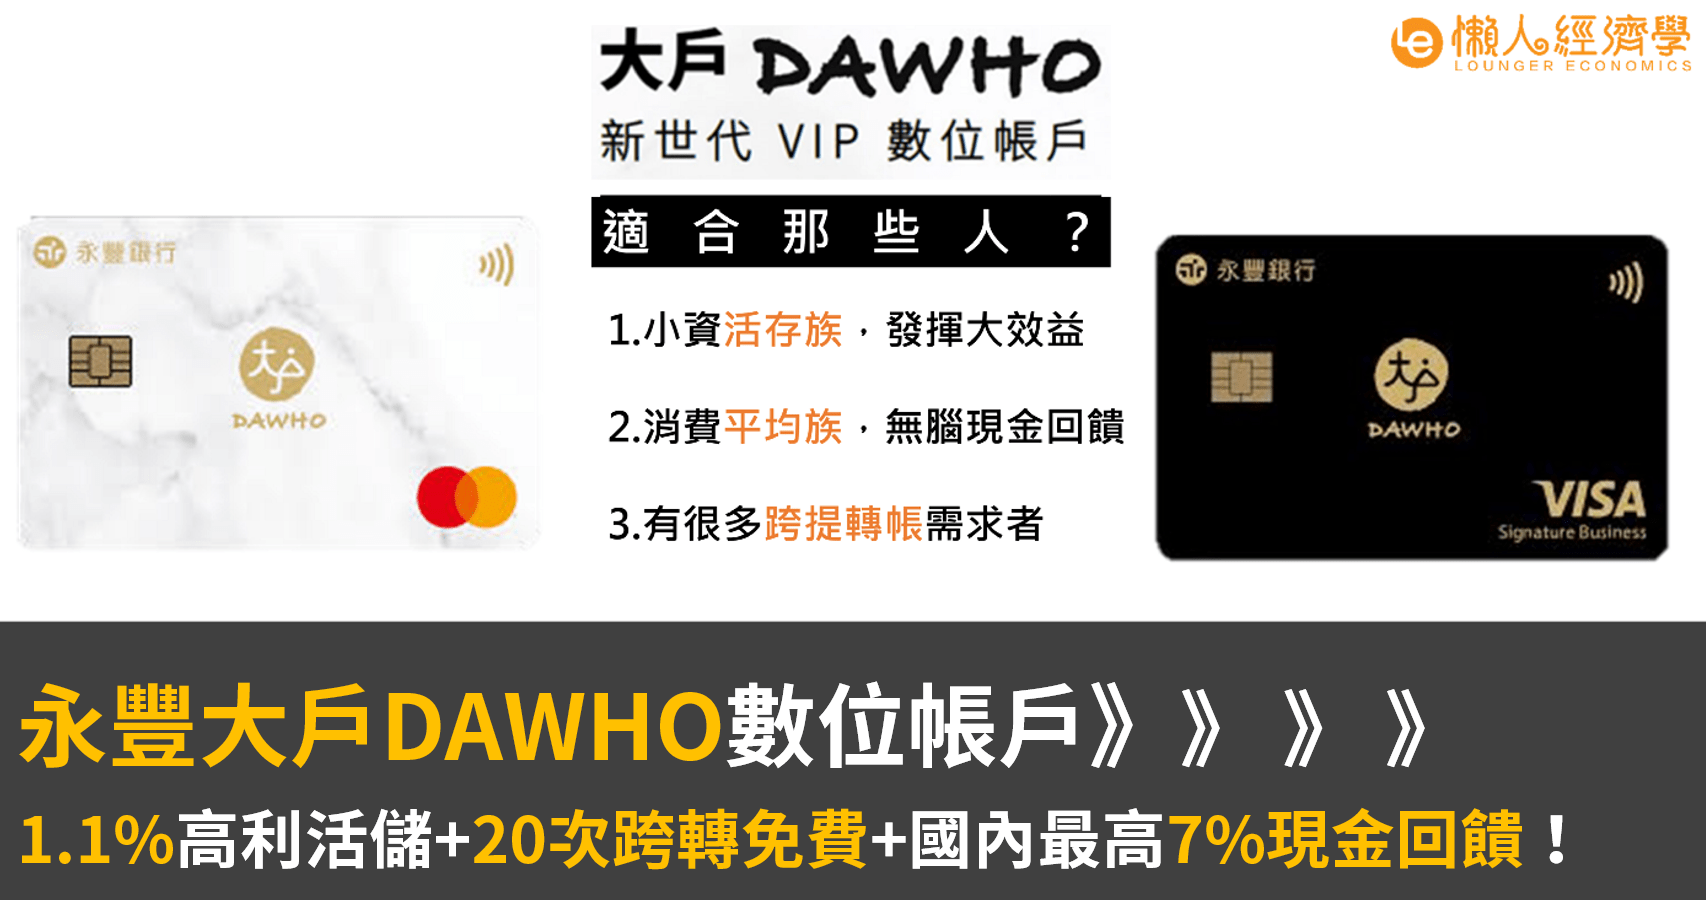 永豐DAWHO大戶數位帳戶介紹 : 1.1%超高活存利率+20次跨轉免費+國內最高7%現金回饋！